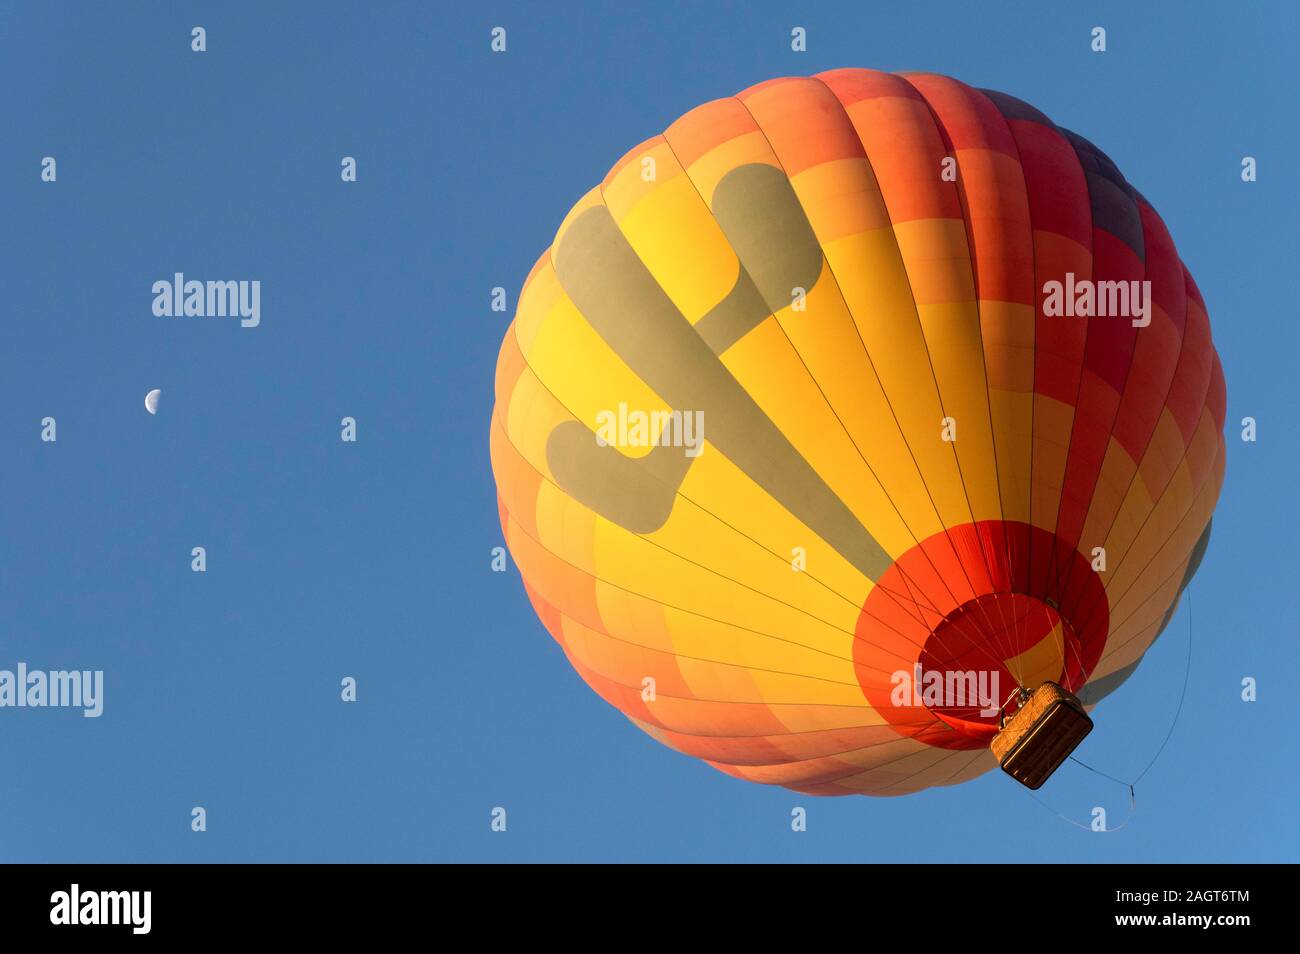 La montgolfière à l'air chaud Expeditions, Phoenix, Arizona Banque D'Images